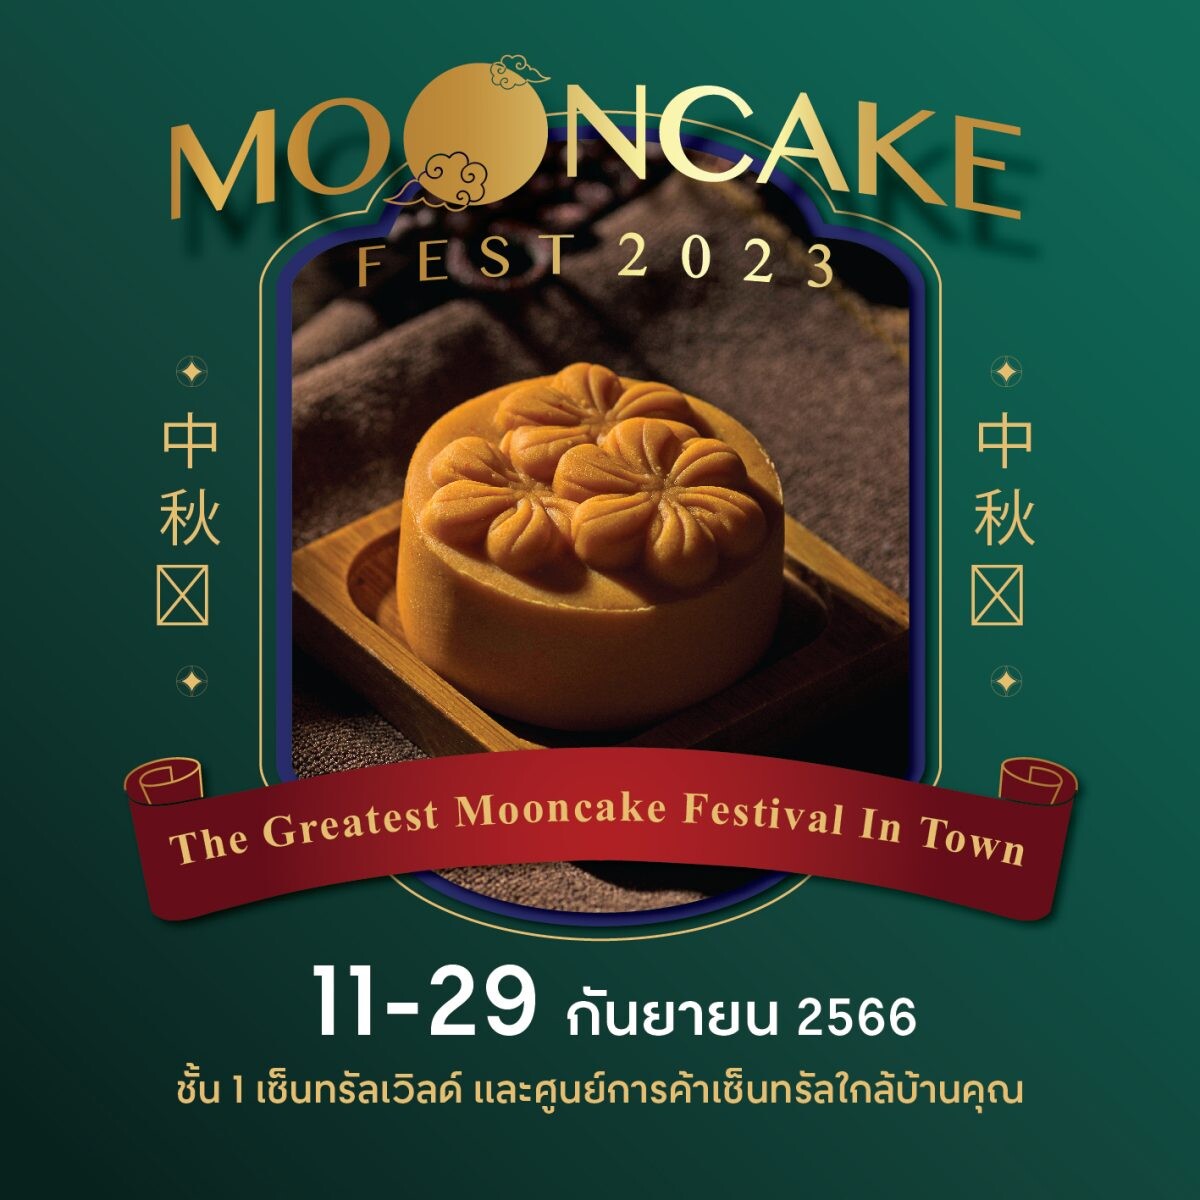 แป้ง Fifth Season เปิดลิสต์ช้อปขนมไหว้พระจันทร์จากโรงแรมดัง และแบรนด์ชั้นนำ ครบและคุ้มสุดๆ เฉพาะงาน Mooncake Fest 2023 ที่ศูนย์การค้าเซ็นทรัลทั่วประเทศ